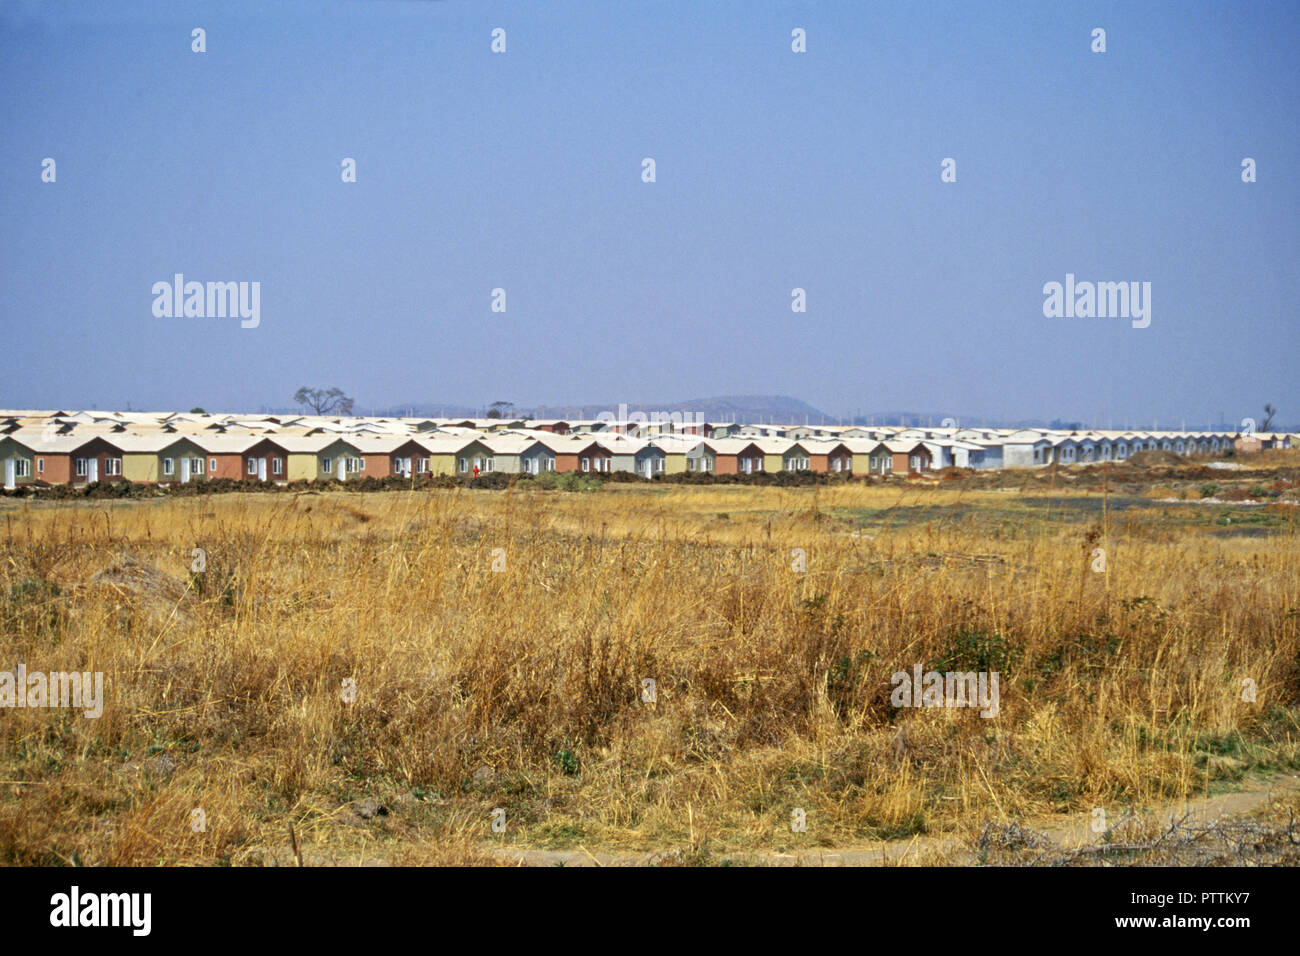 Un service haute densité de logements, Harare, Zimbabwe Banque D'Images